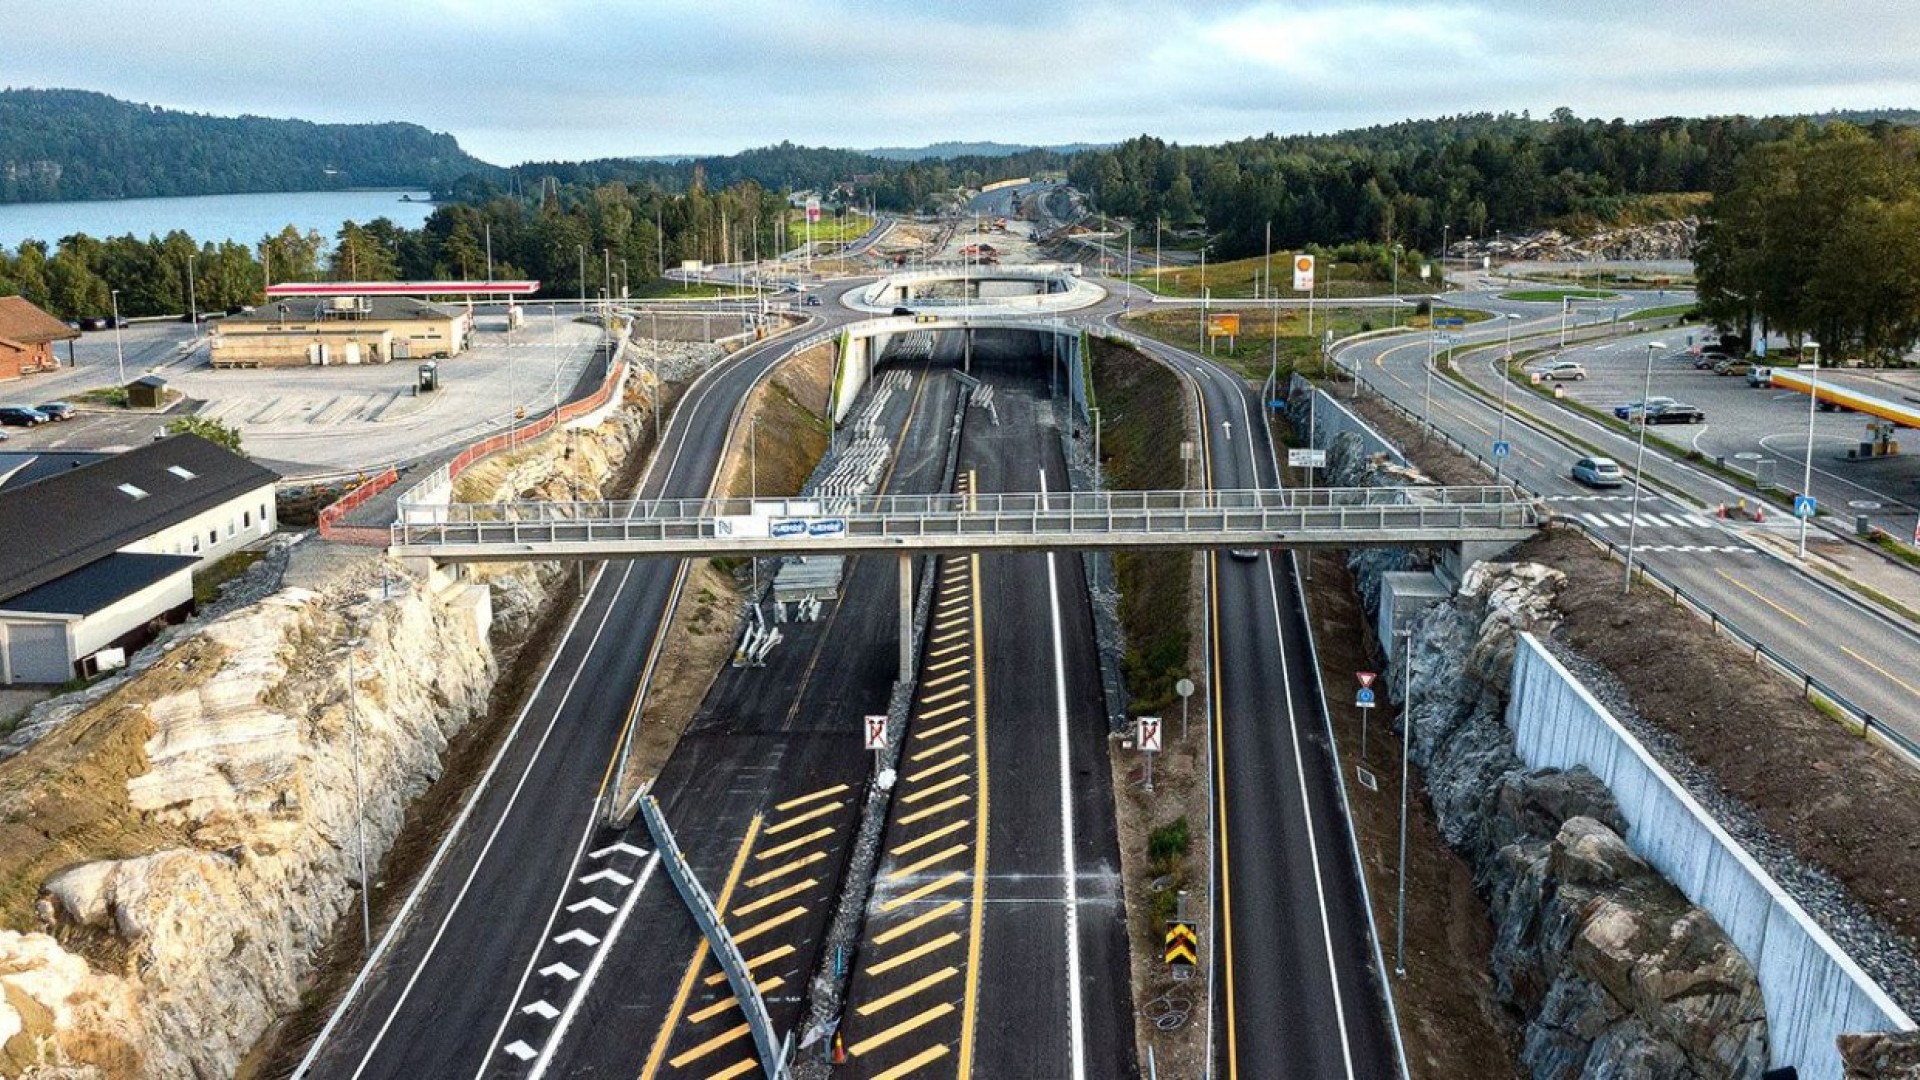 E18 Rugtvedt – Dørdal:  Rugtvedtkrysset bridges K215/K216